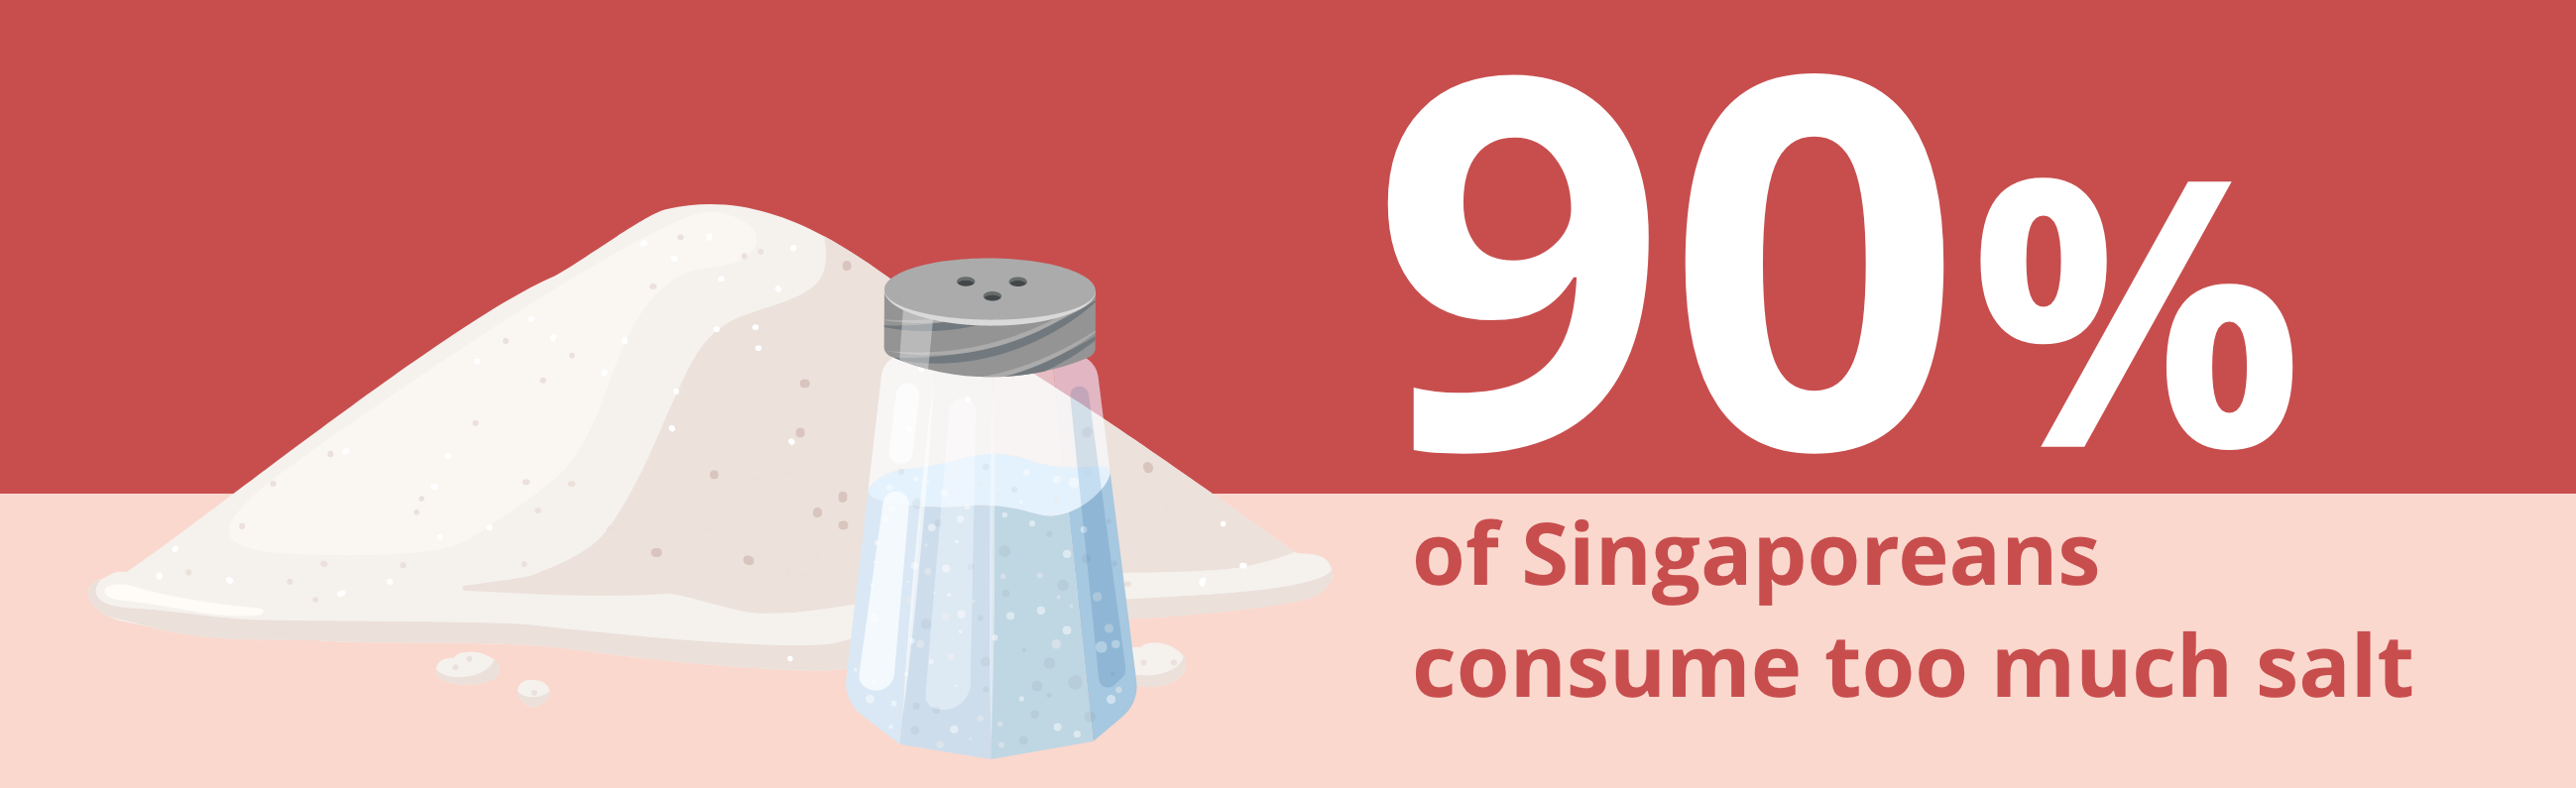 90% of Singaporeans consume too much salt